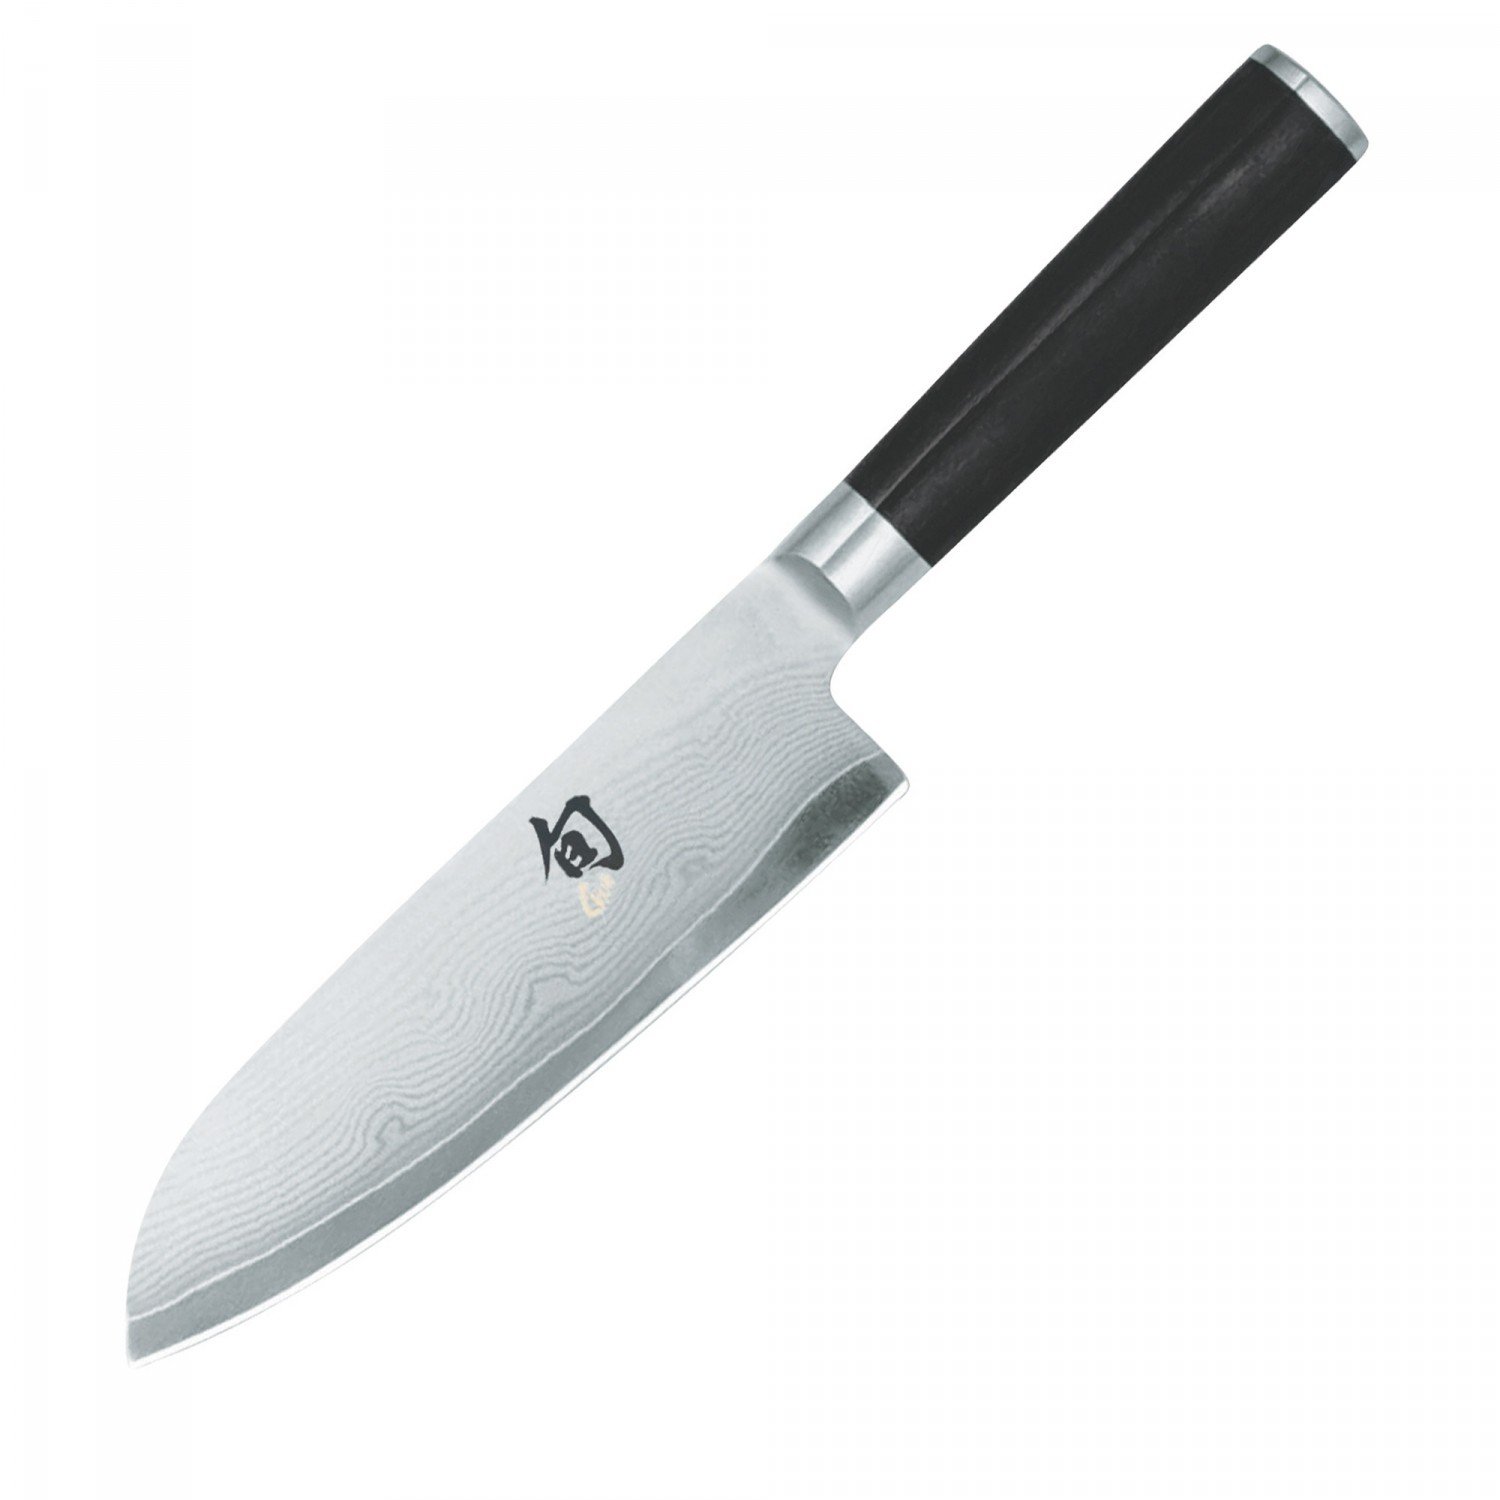 貝印 旬 Classic 三徳ナイフ 左利き用 175mm 日本製 Shun ステンレス 包丁